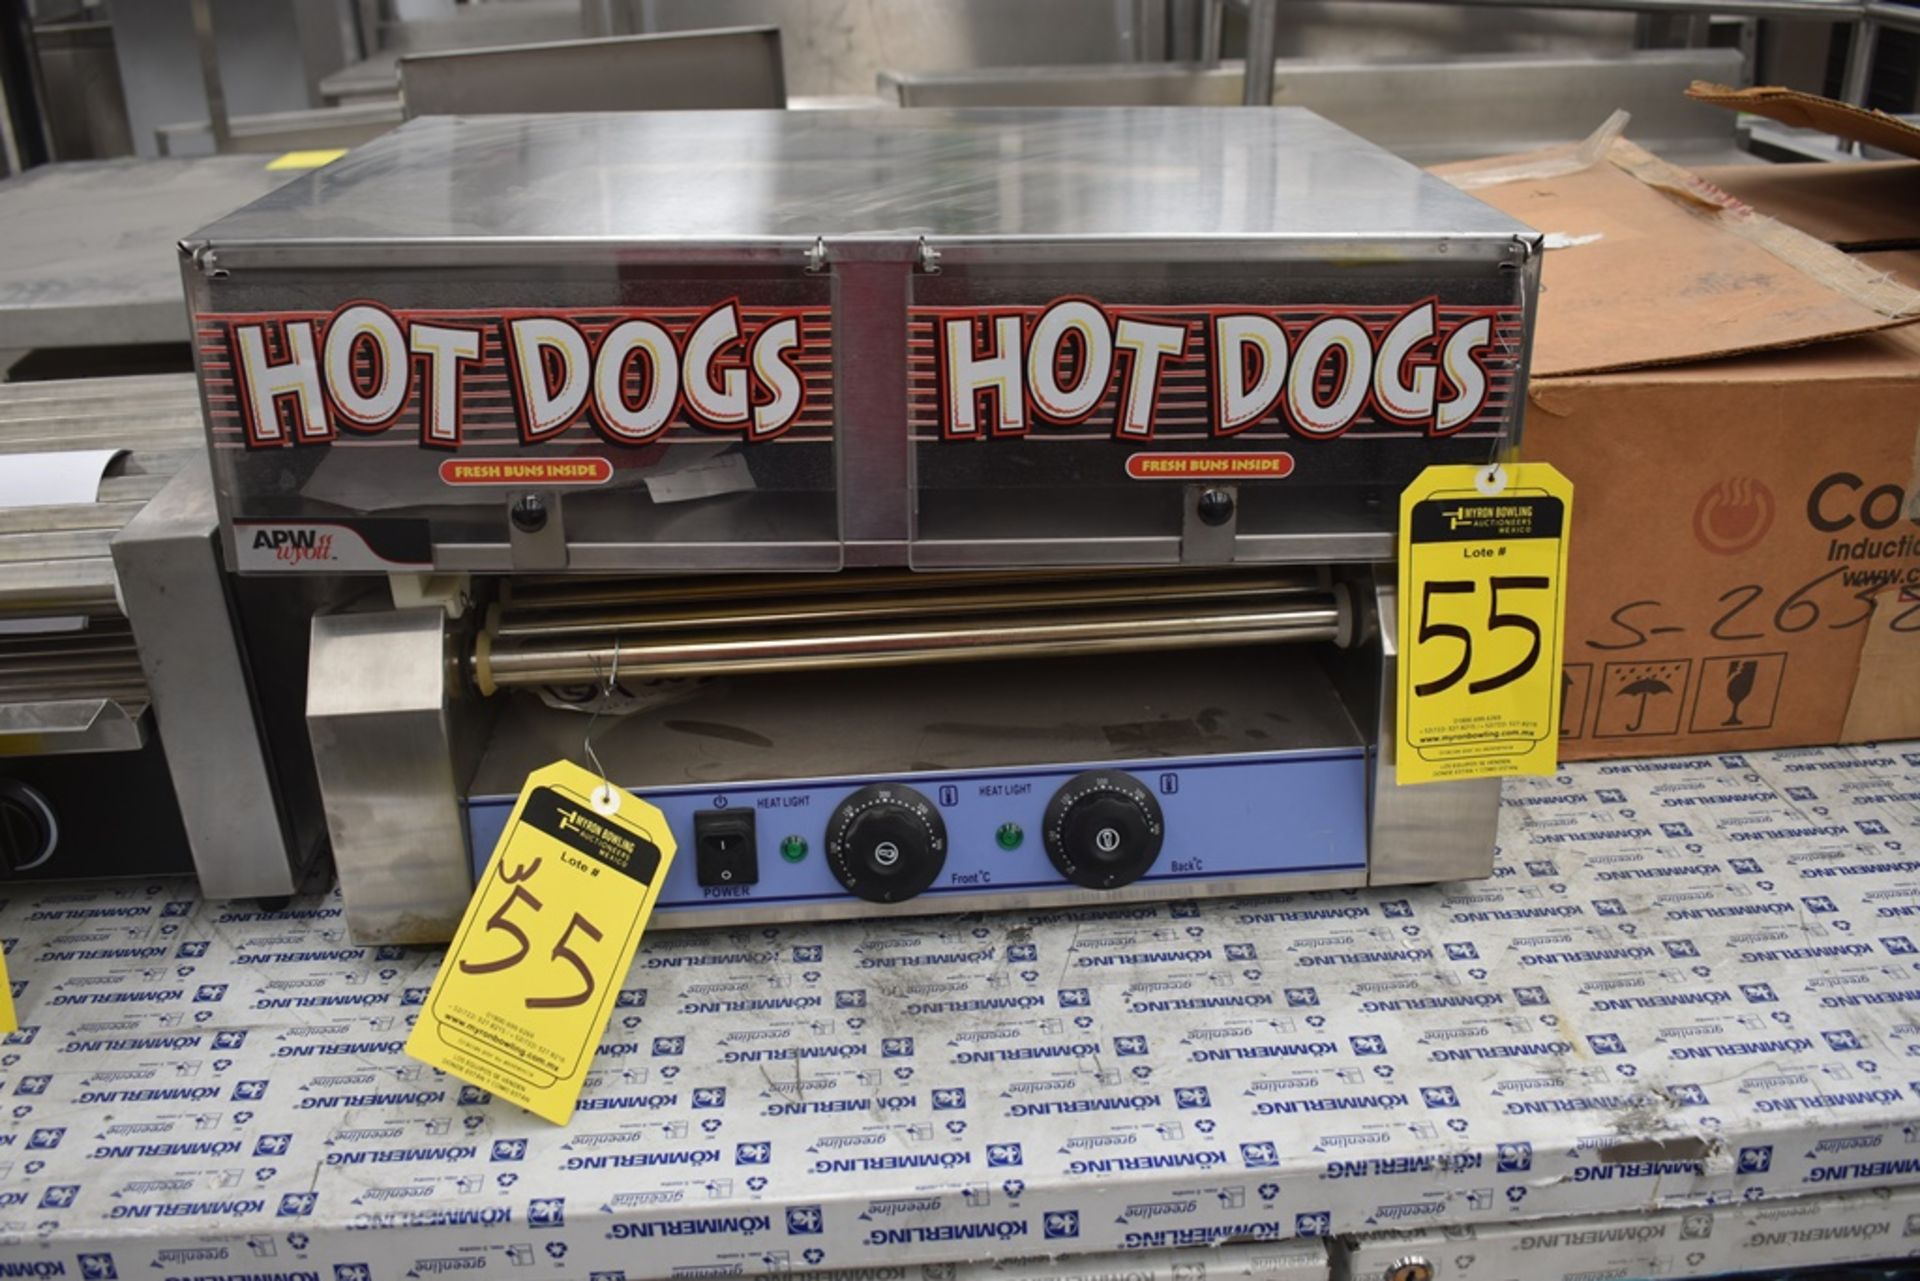 NUEVOS Roller Para Salchicha De Hot Dog eléctrico (Hot Dog Grill) Marca Kreppsland, Modelo Cz-9,110v - Image 15 of 27